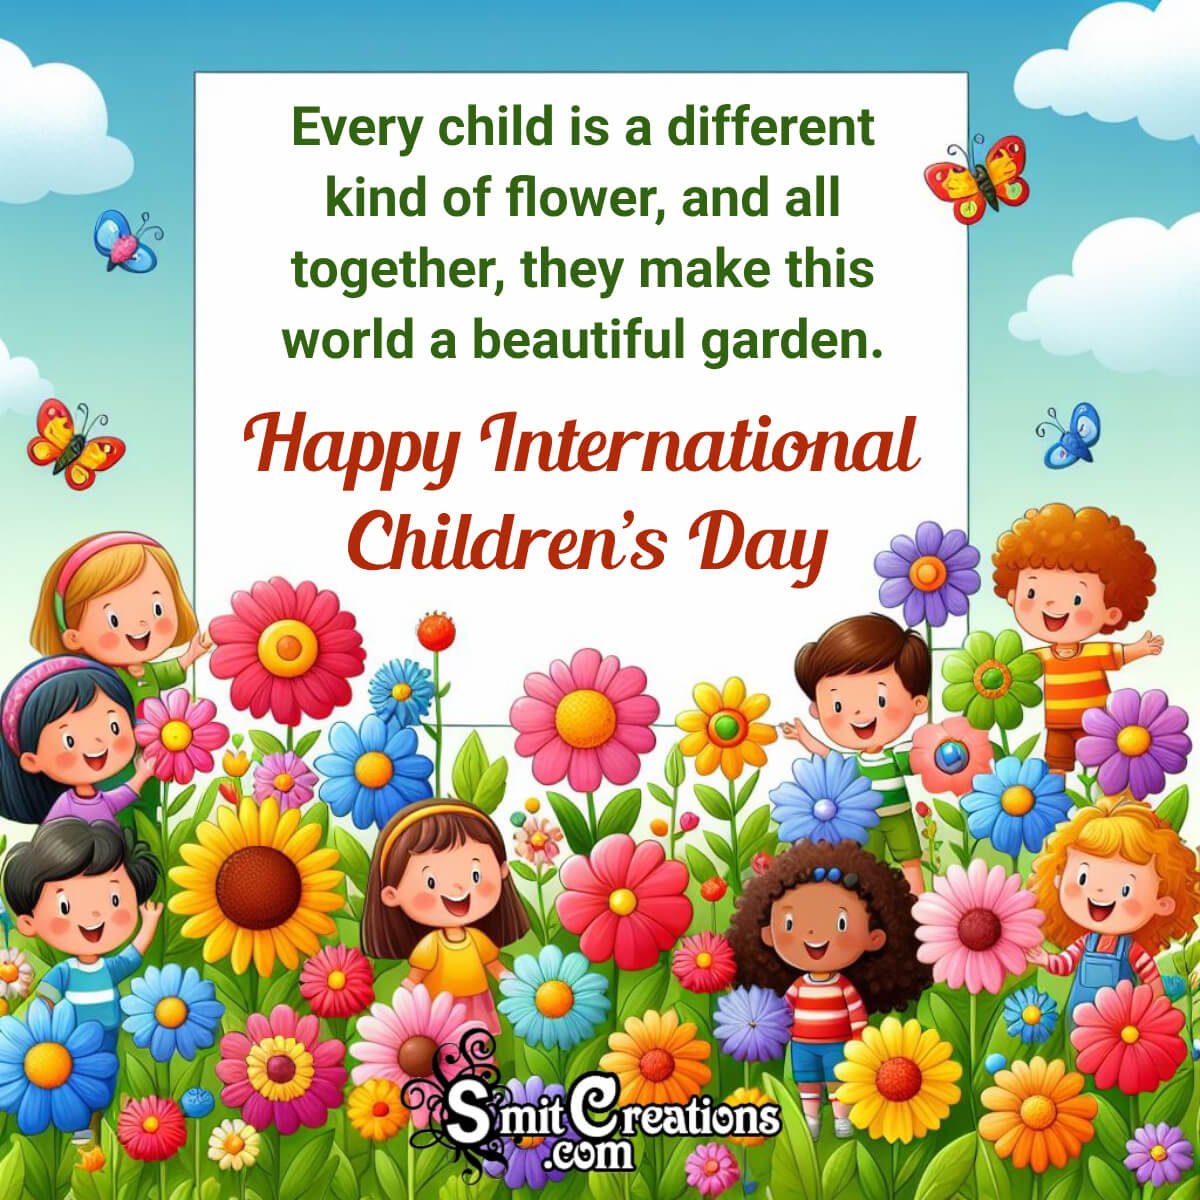 Happy International Children’s Day Wish Picture